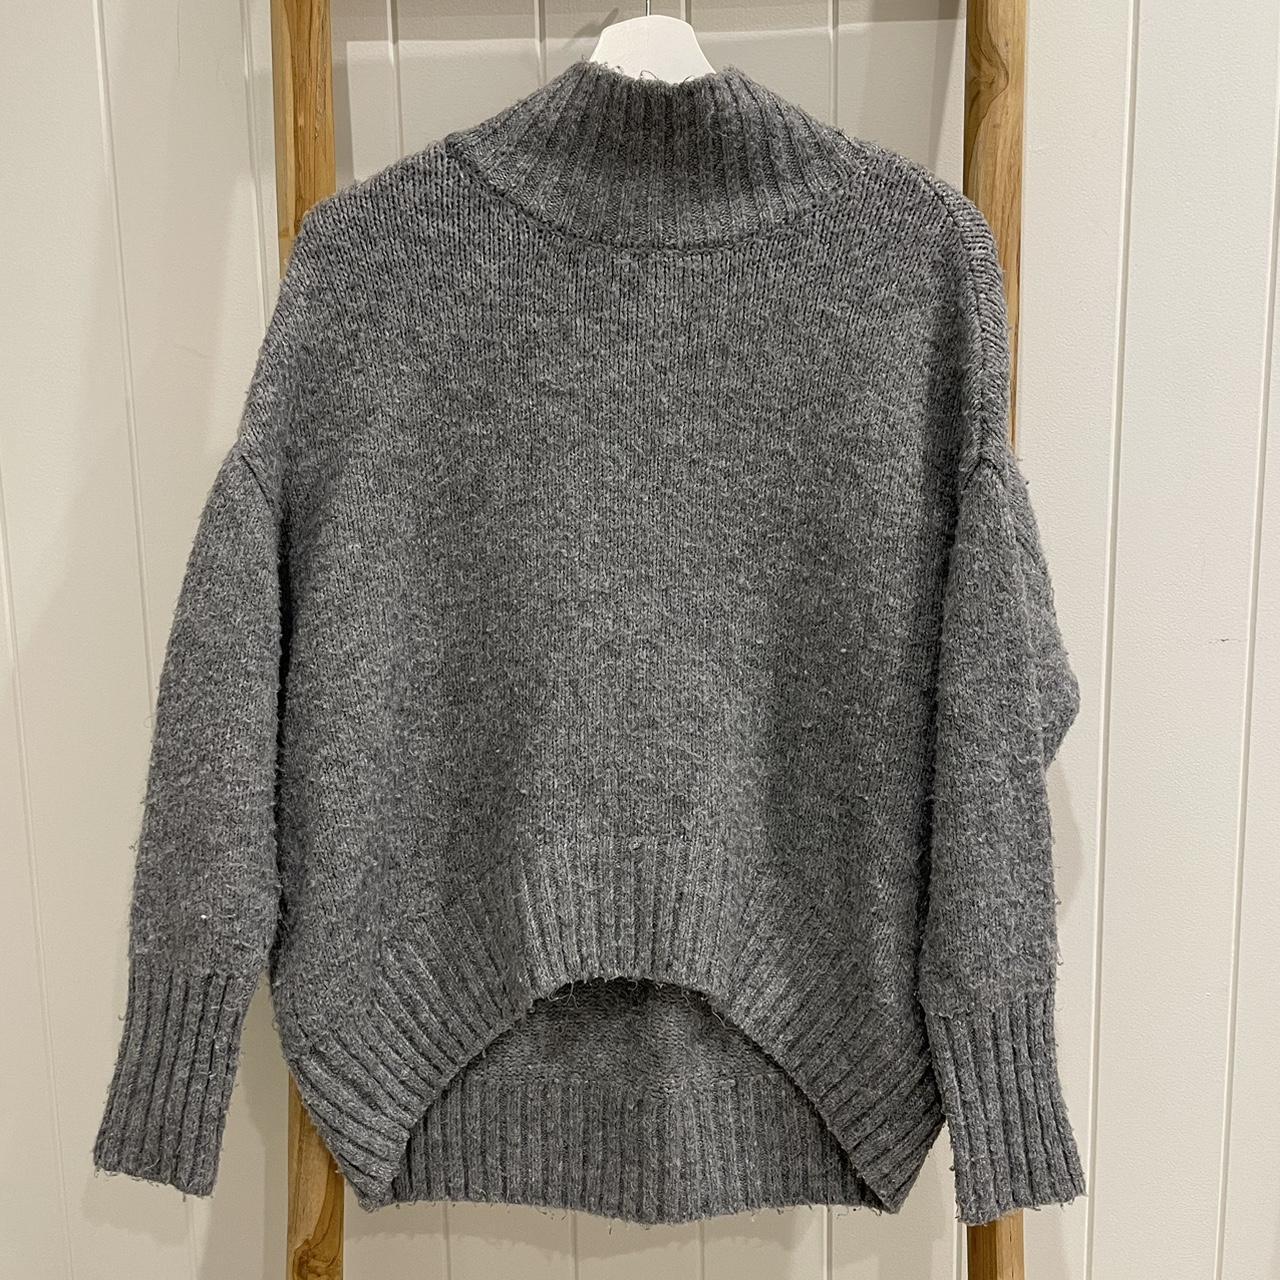 Grey wool knit jumper size 8 - Depop